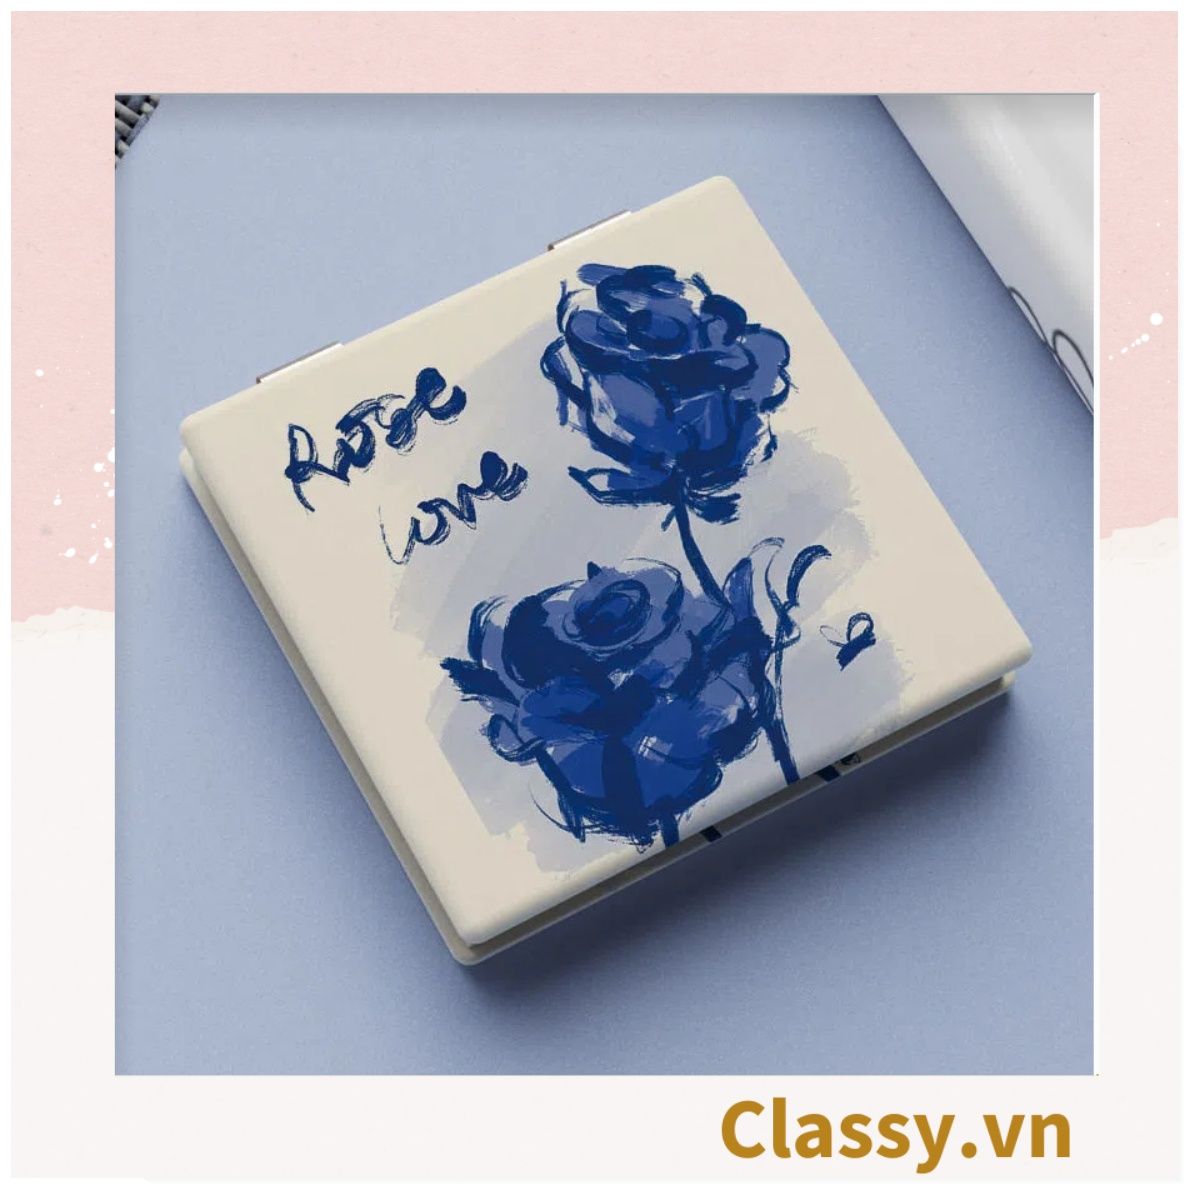  Gương trang điểm cầm tay mini 2 mặt bỏ túi kèm lược, Gương cầm tay mini Hàn Quốc siêu cute, Gương Vintage Hoa hồng PK569 